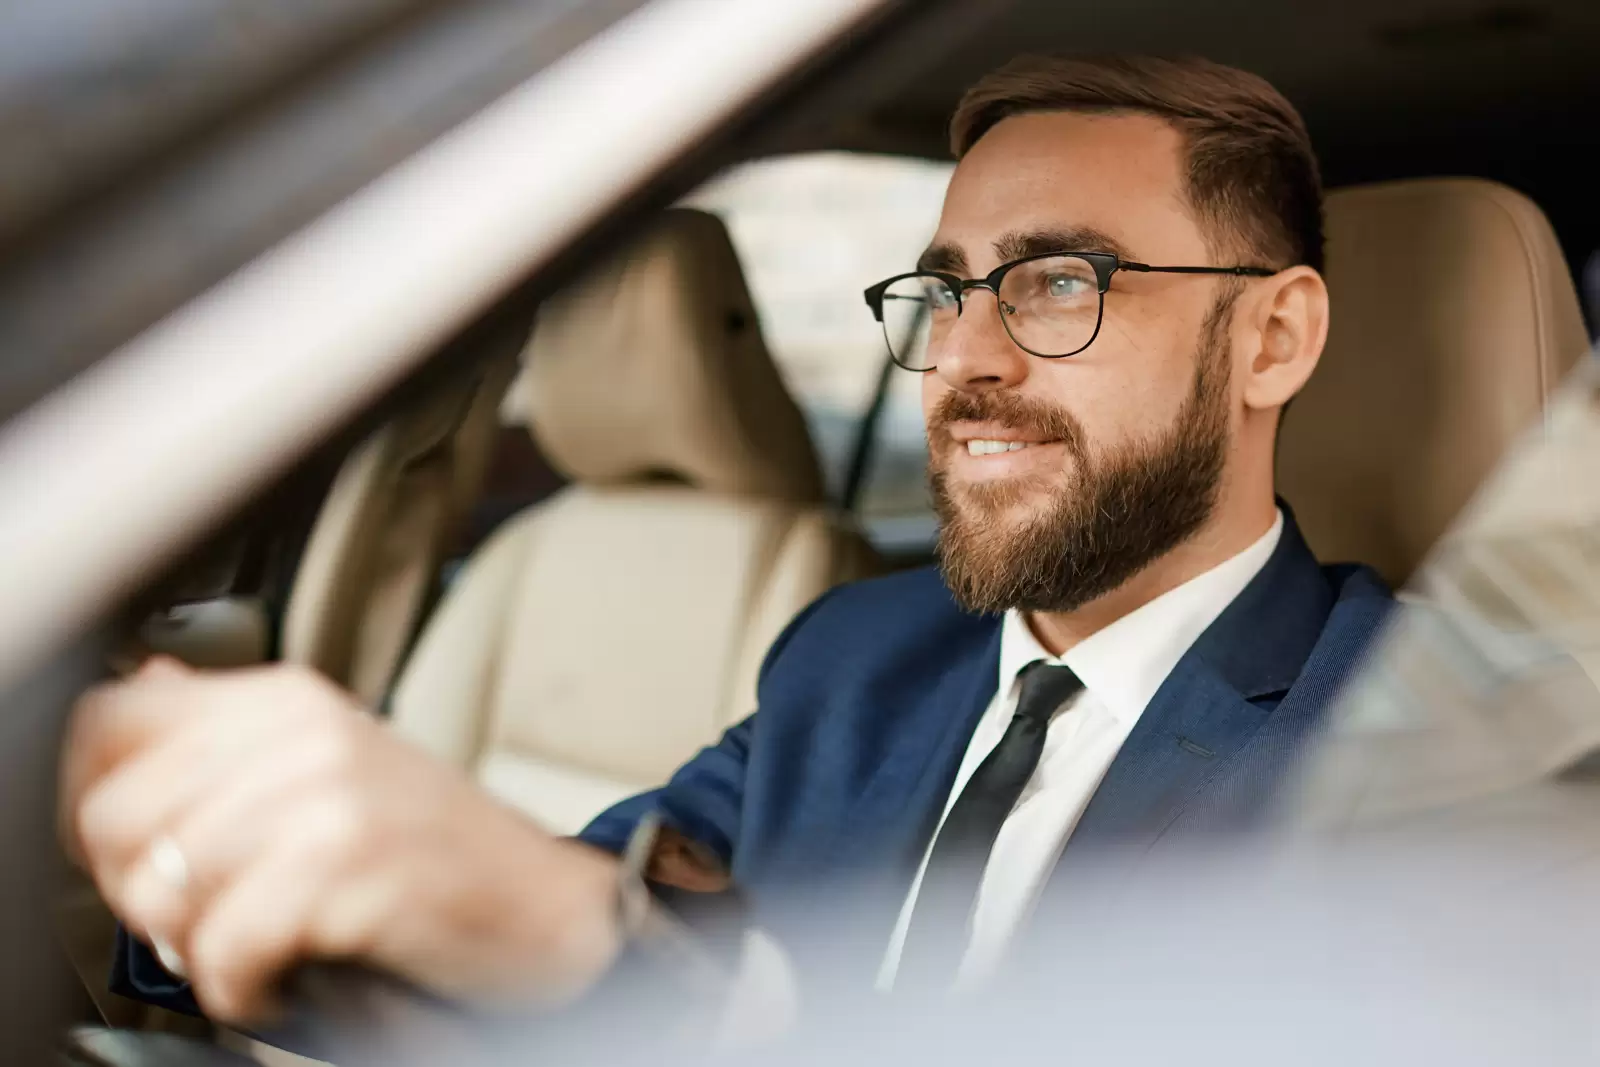 Foto de homem sorrindo e dirigindo um carro com bancos de couro na cor marrom. O homem possui barba e usa óculos de grau com armação preta. Veste blusa branca, terno azul e gravata preta. A imagem é captada da janela do motorista do carro.